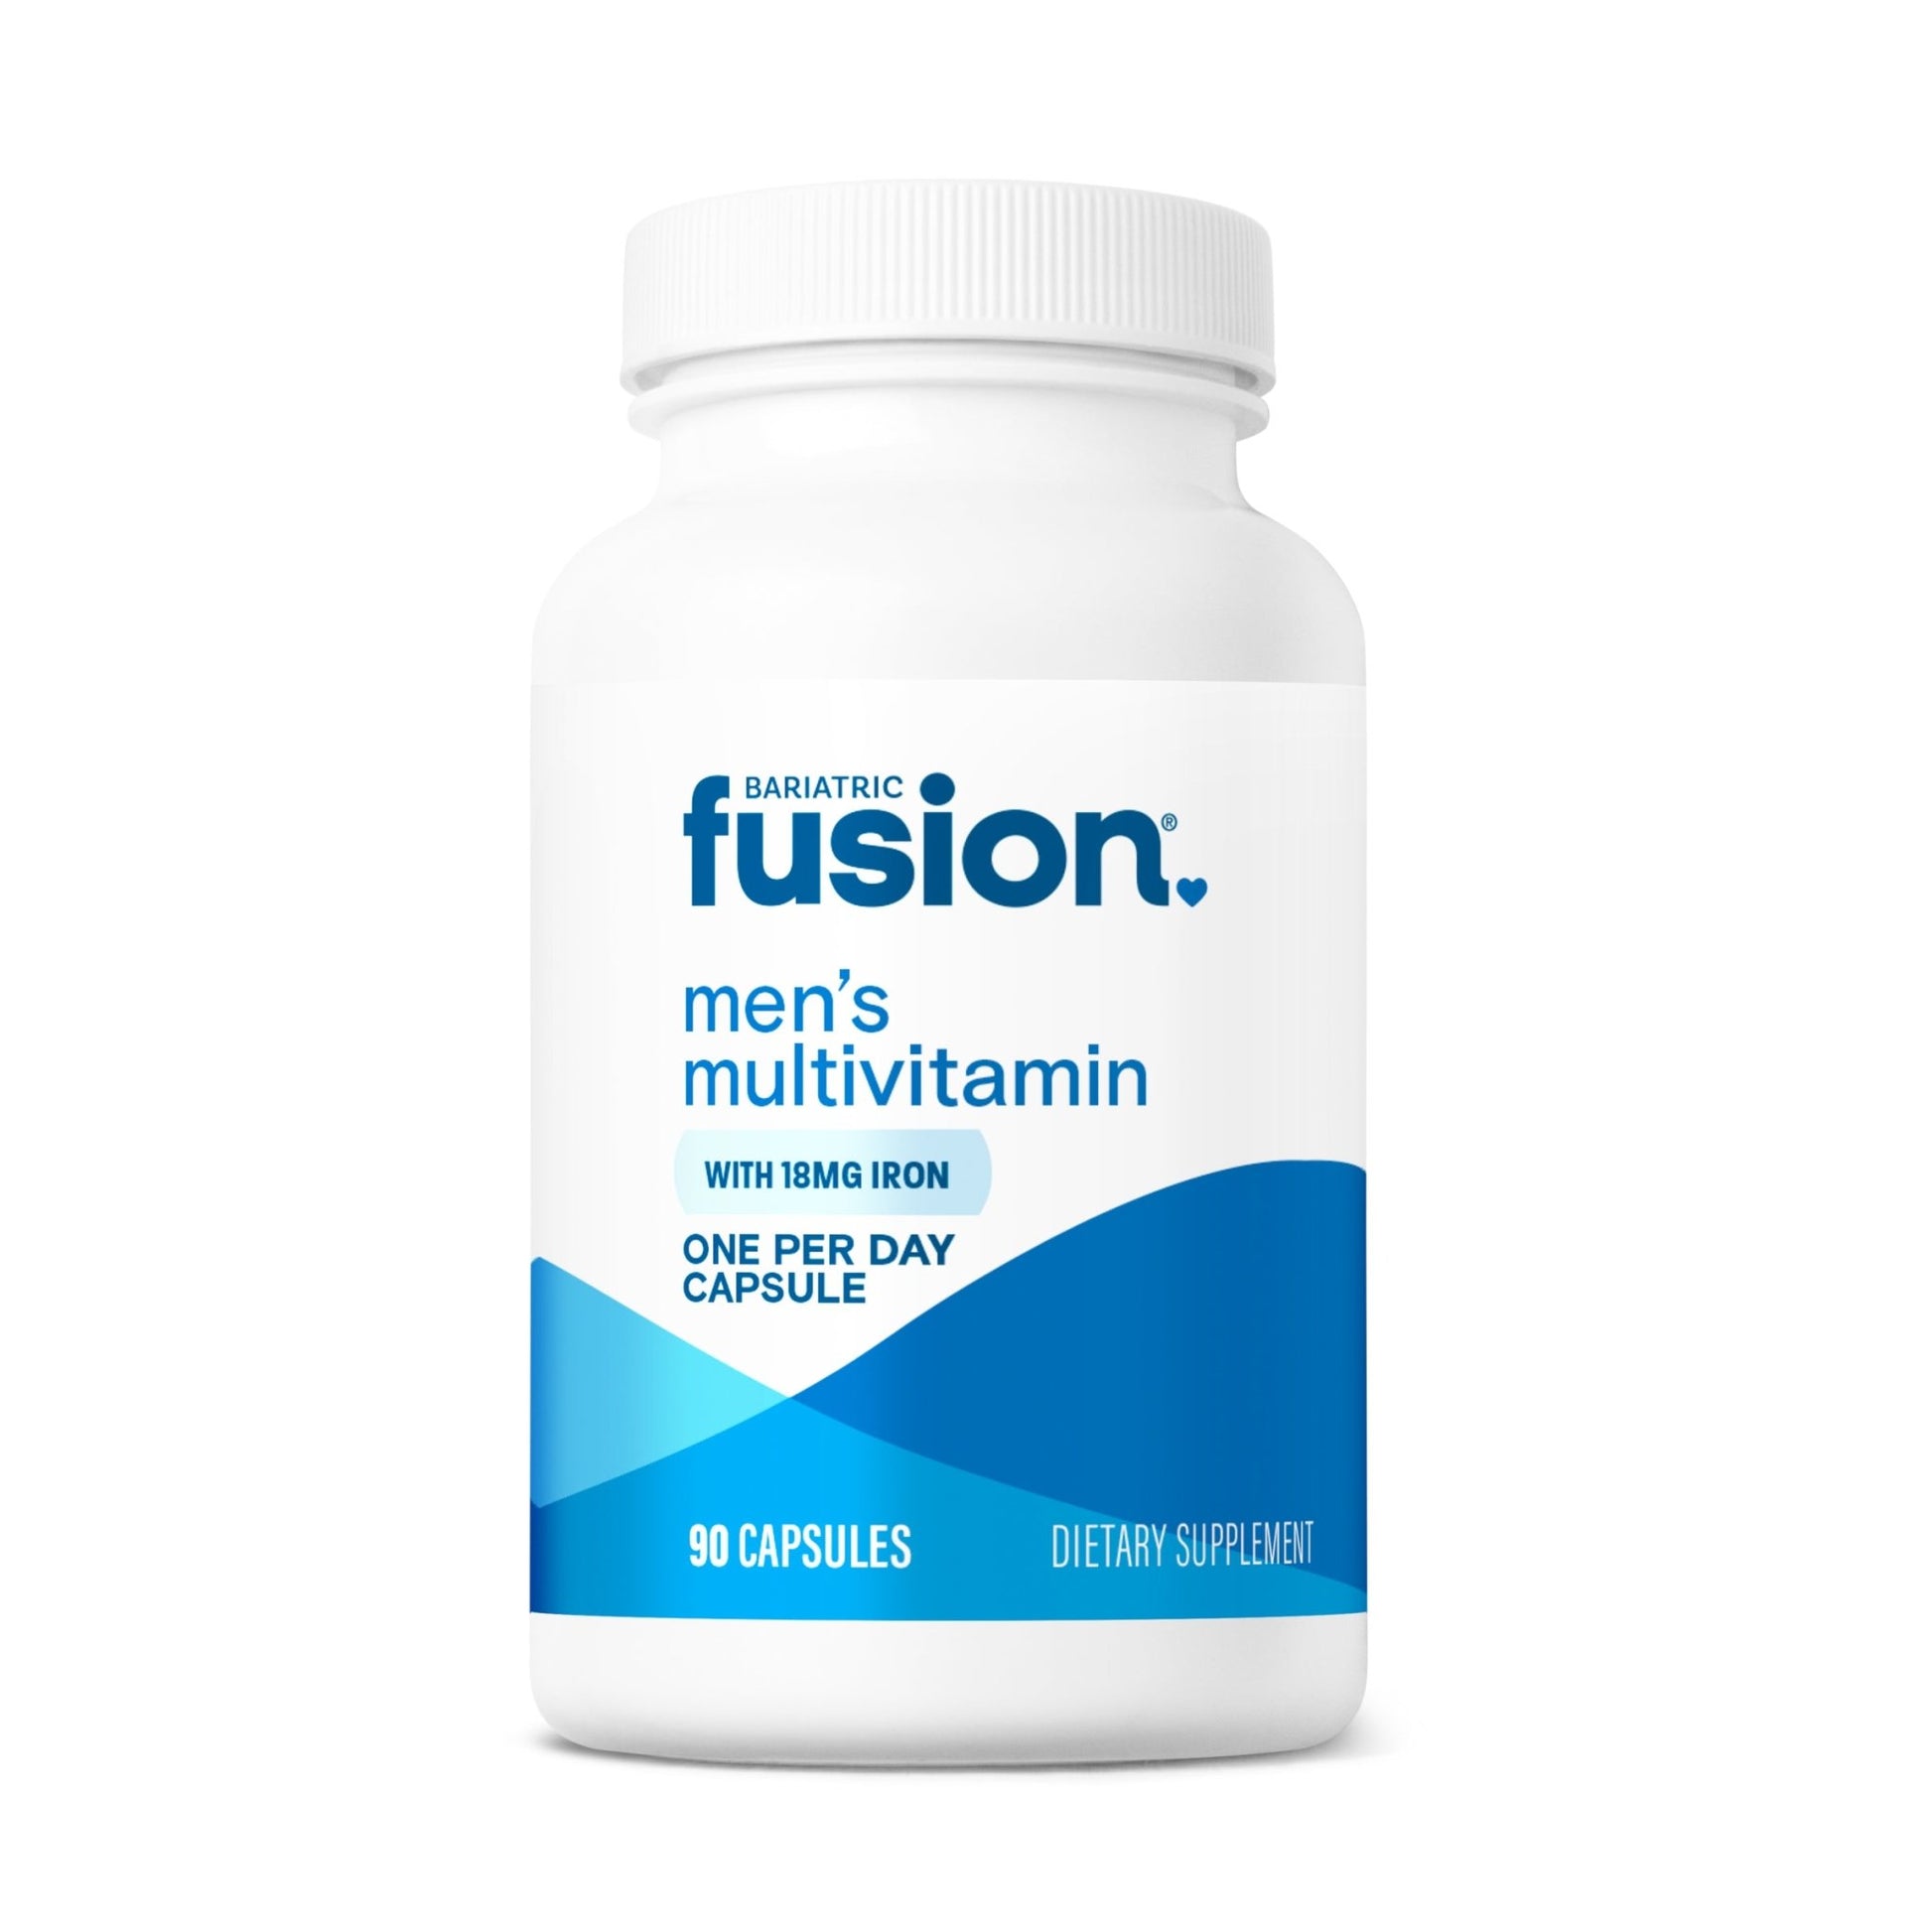 Bariatric Fusion Men’s One Per Day Bariatric Multivitamin 90 capsules